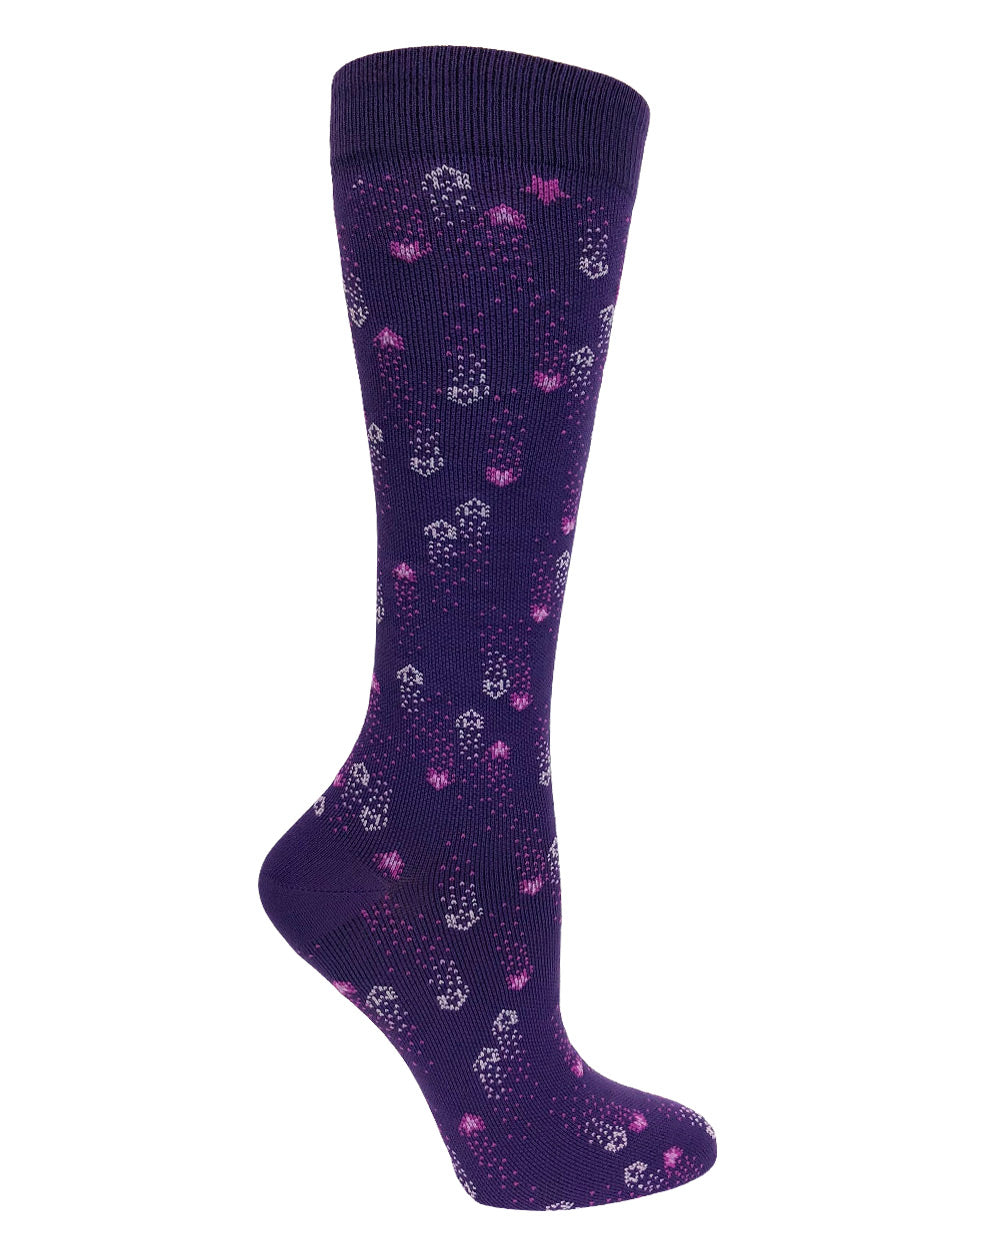 12" Premium Knit Compression Socks by Prestige / Shooting Stars Purple